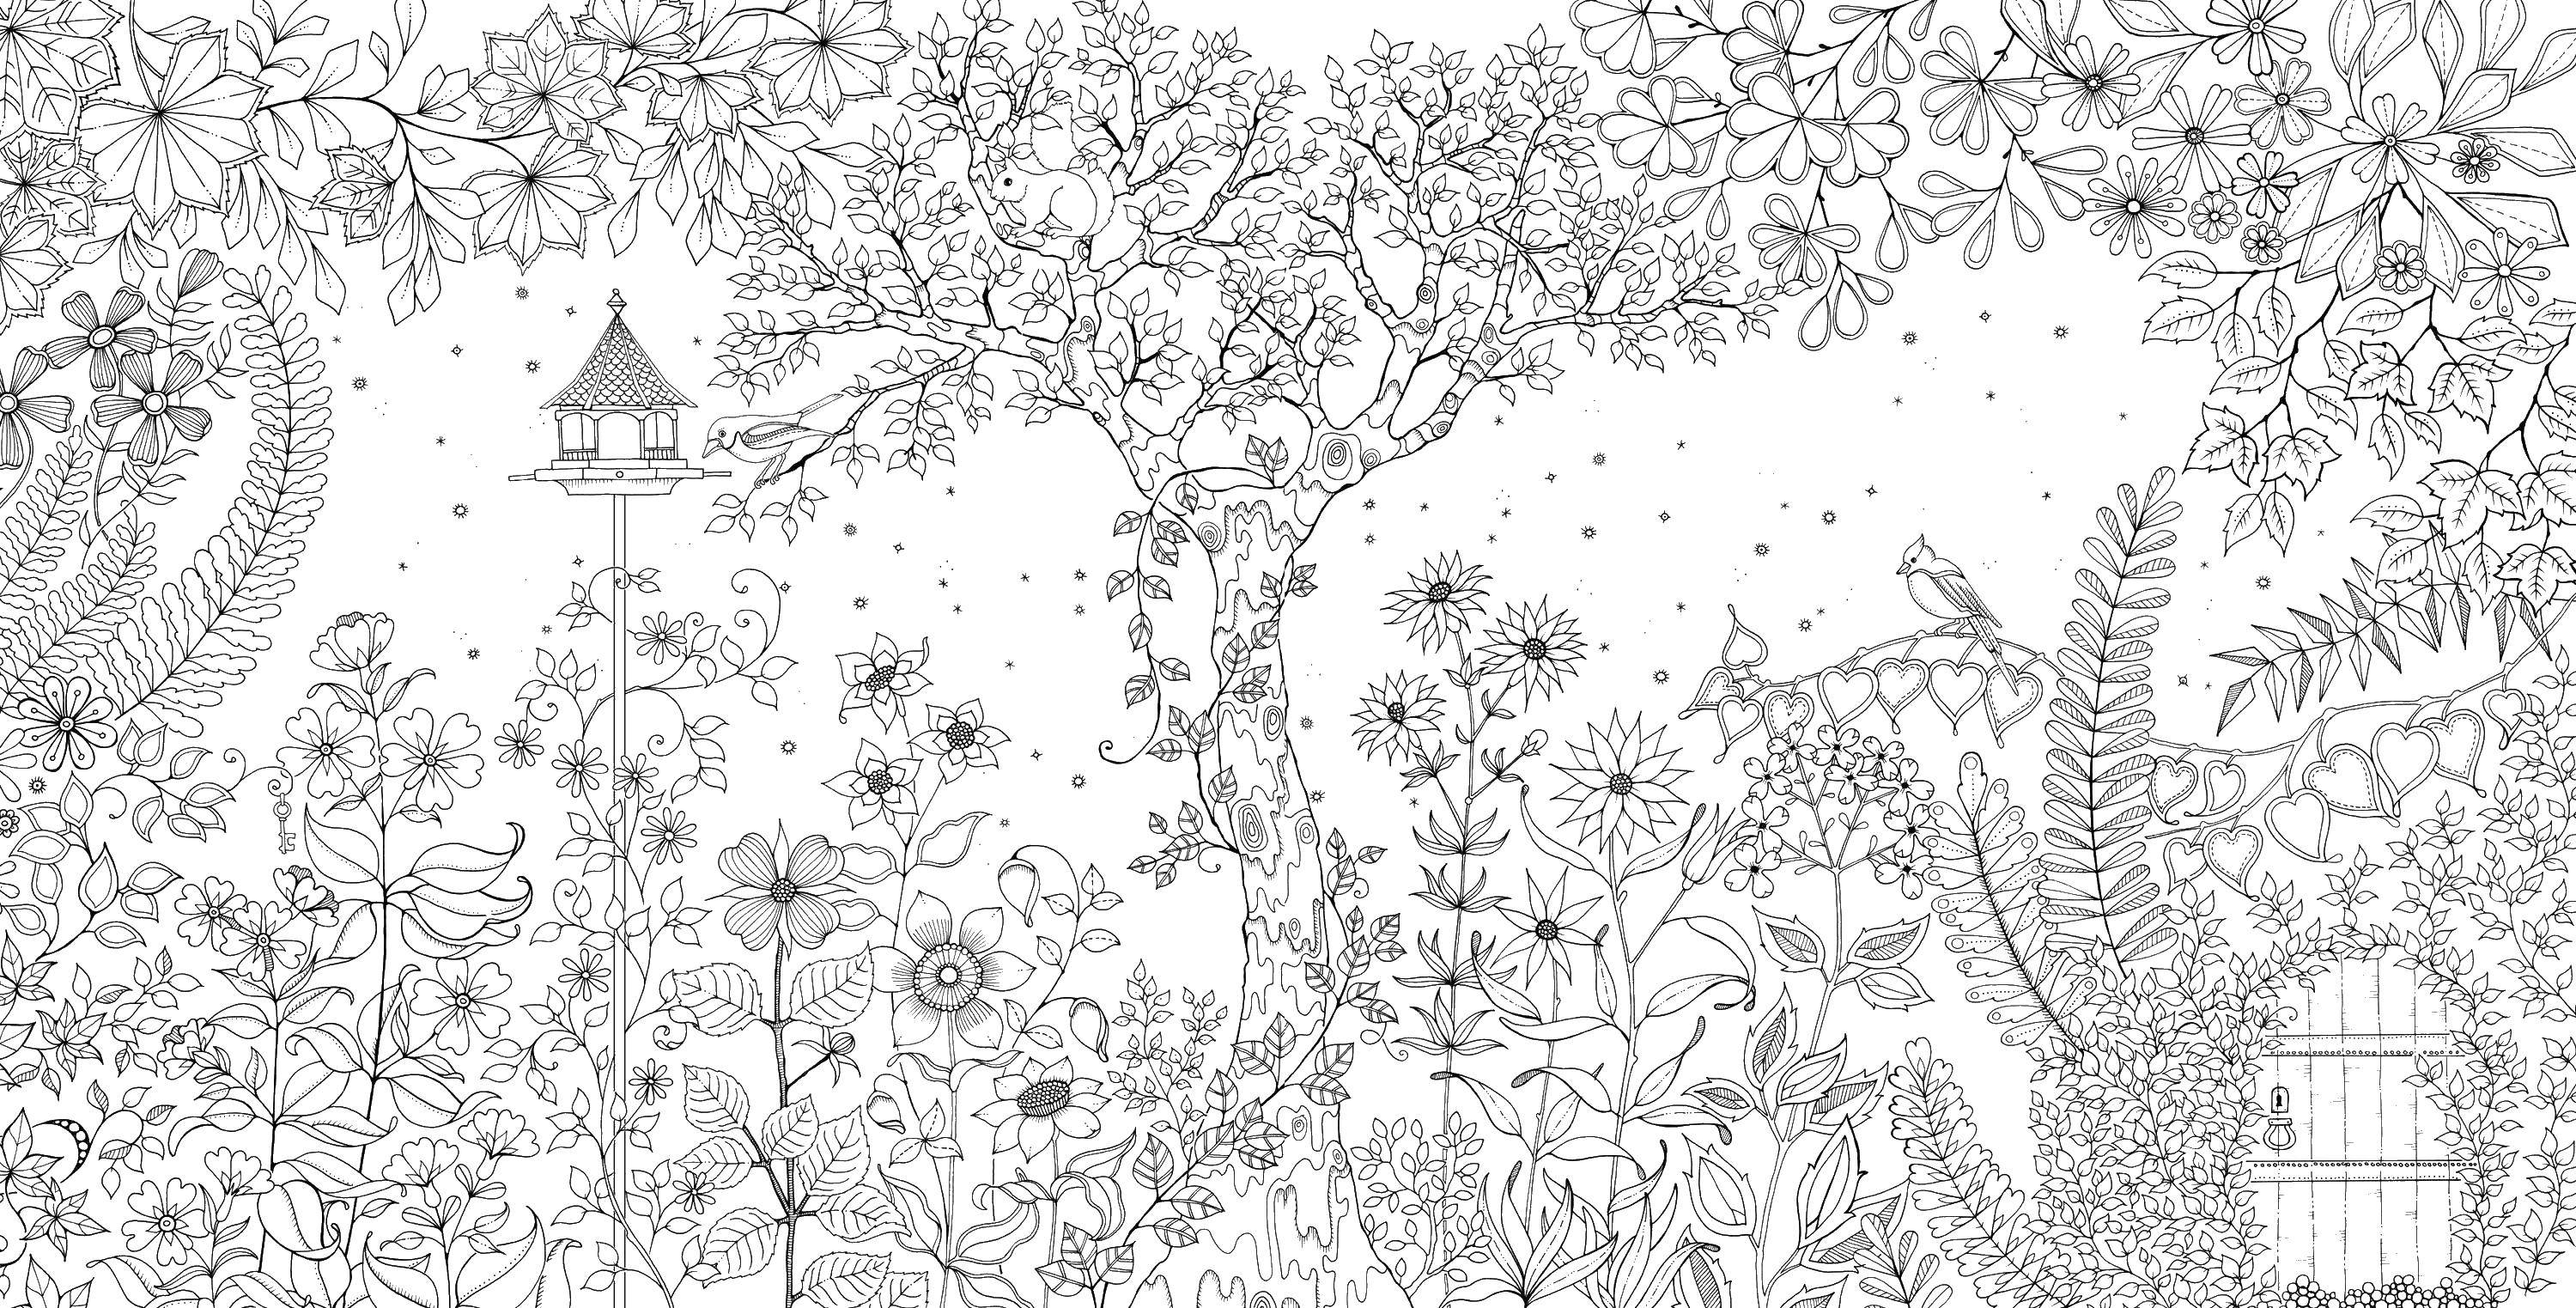 Недорого Раскраска по номерам на холсте Таинственный сад ©annasteshka Магазин ВсеТак